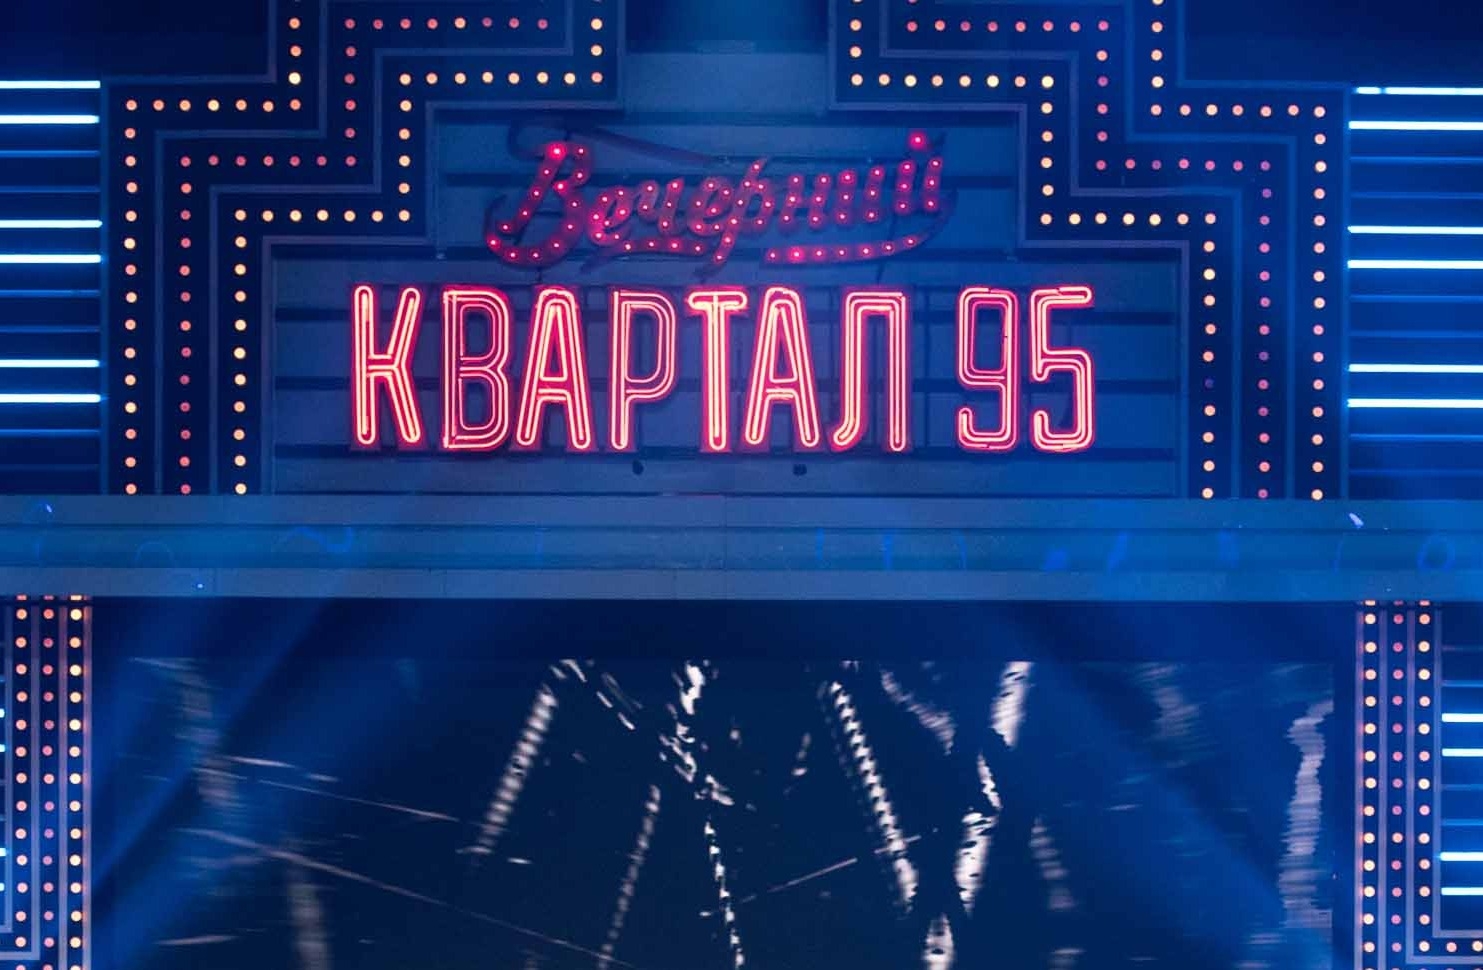 В Госдуме предложили запретить показ по ТВ продукции «Квартала-95»